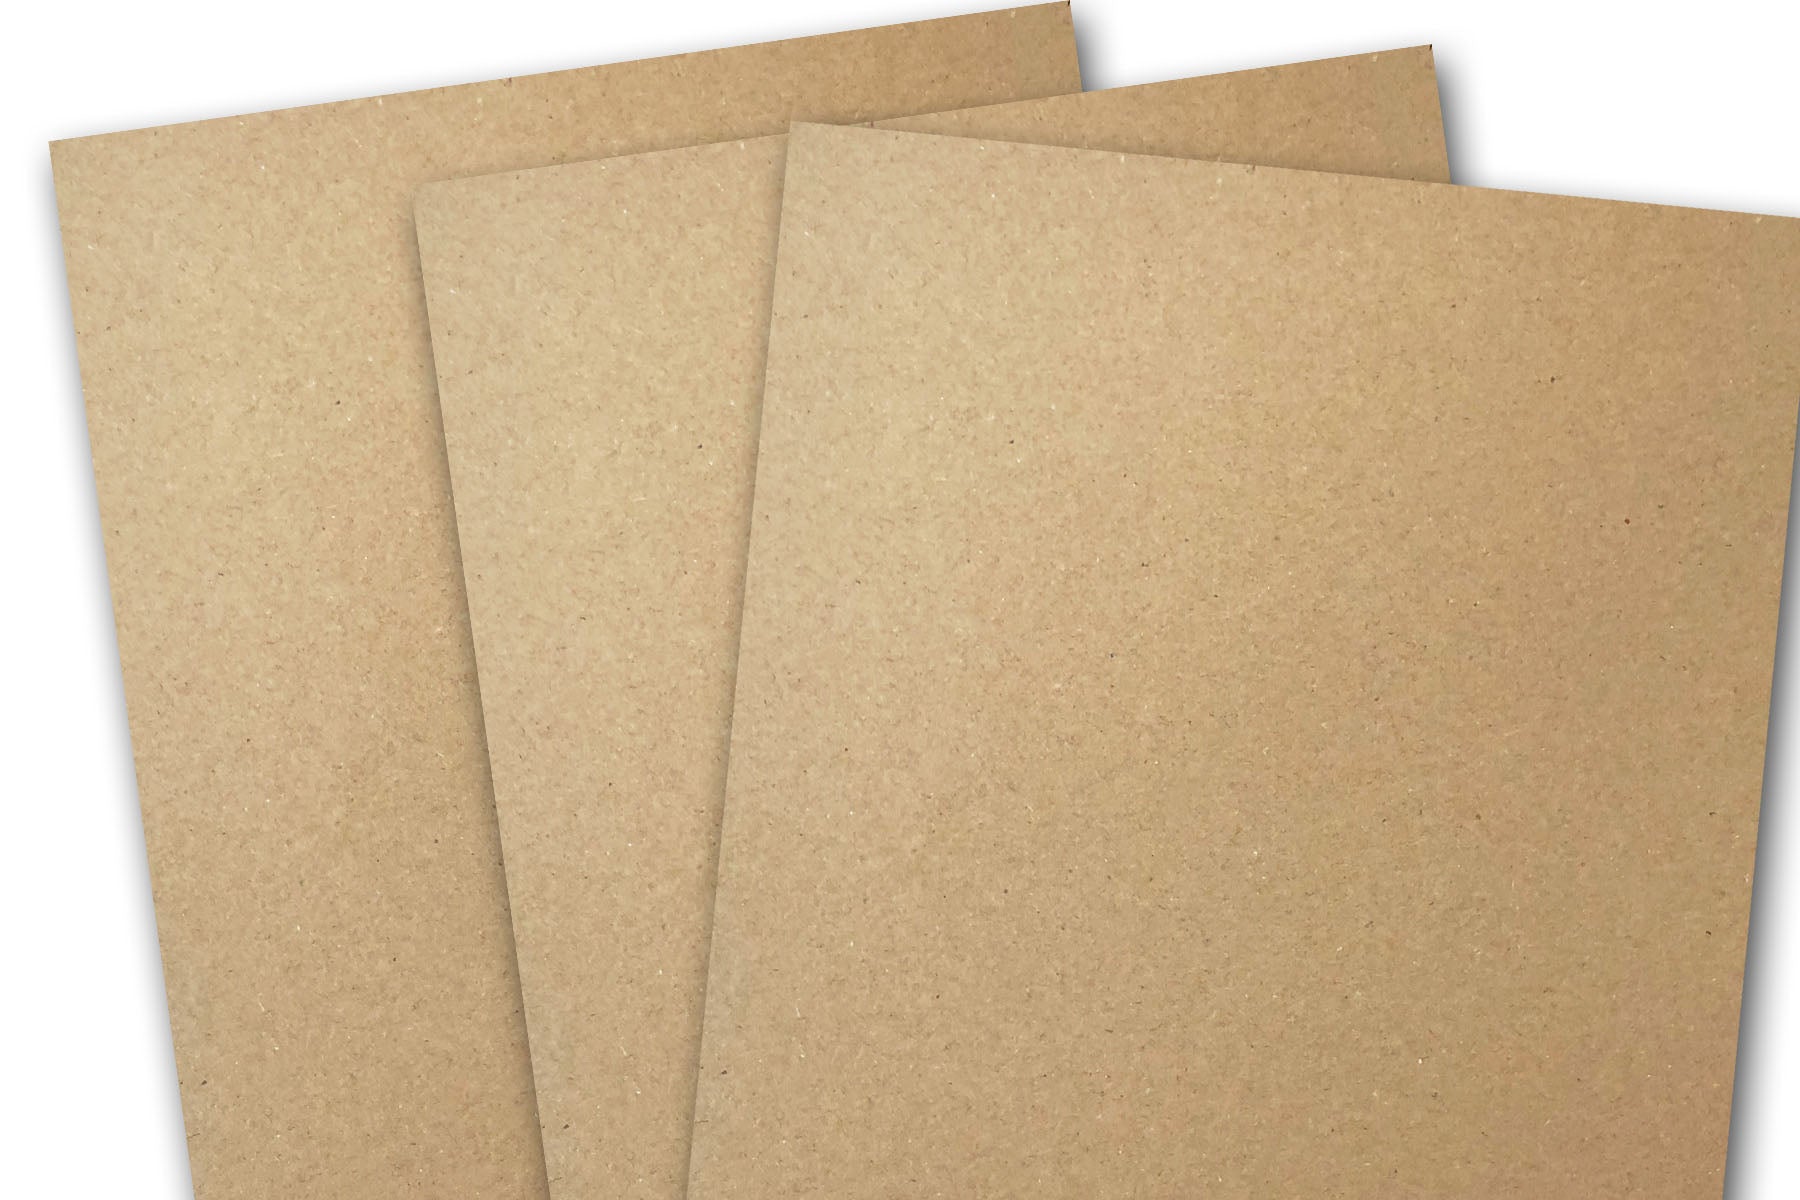 Pop Tone HOT FUDGE brown card stock for paper crafting - CutCardStock